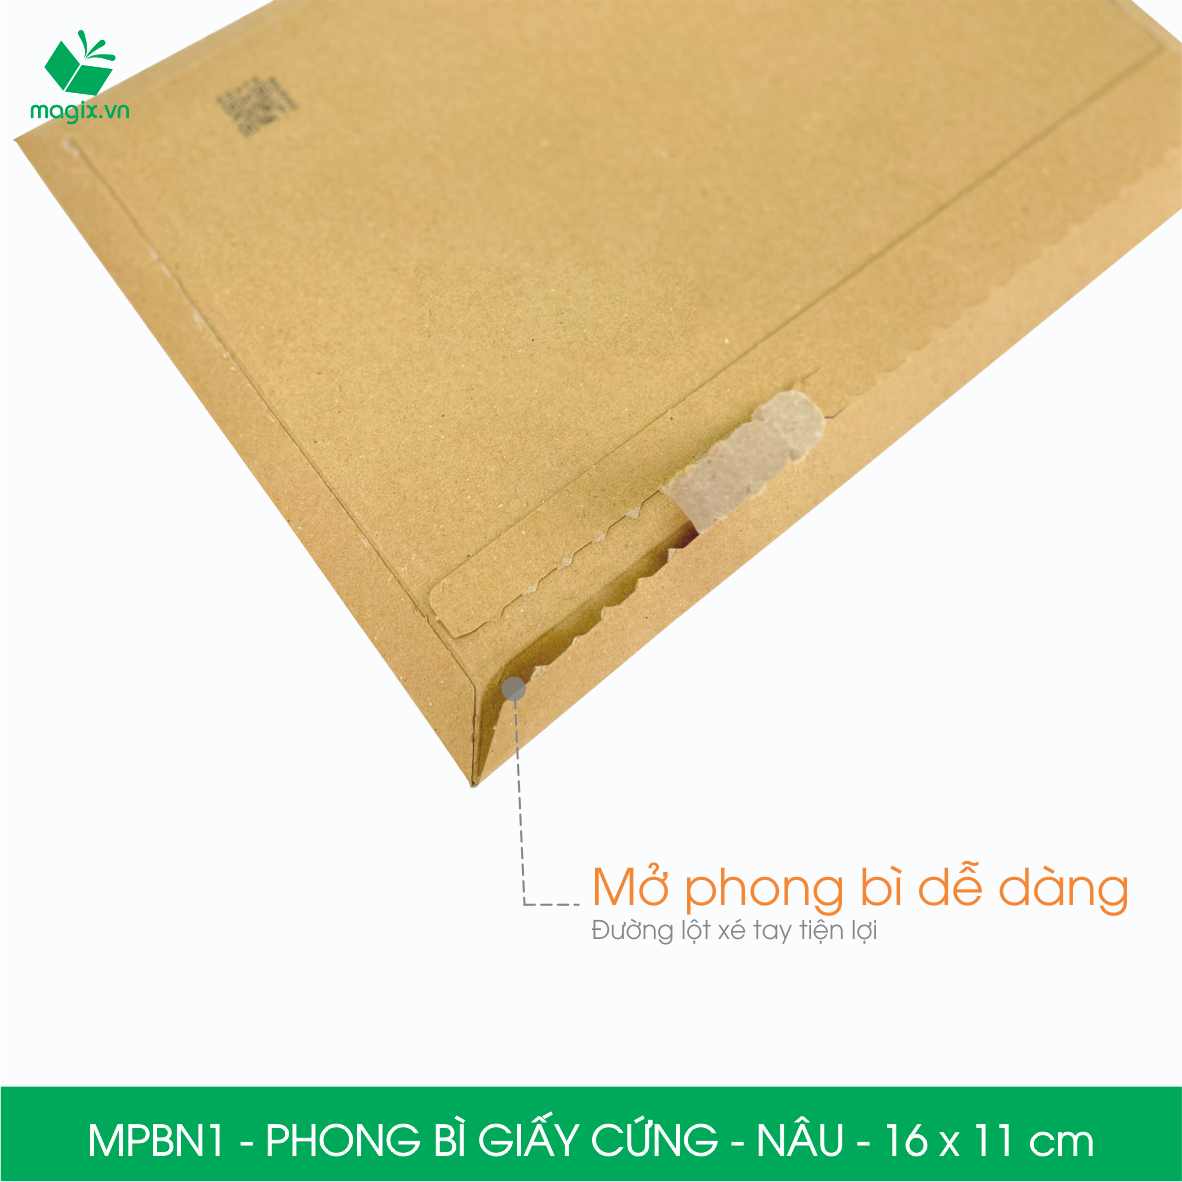 MPBN1 - 16x11 cm - Combo 100 phong bì giấy cứng đóng hàng màu nâu thay thế túi gói hàng